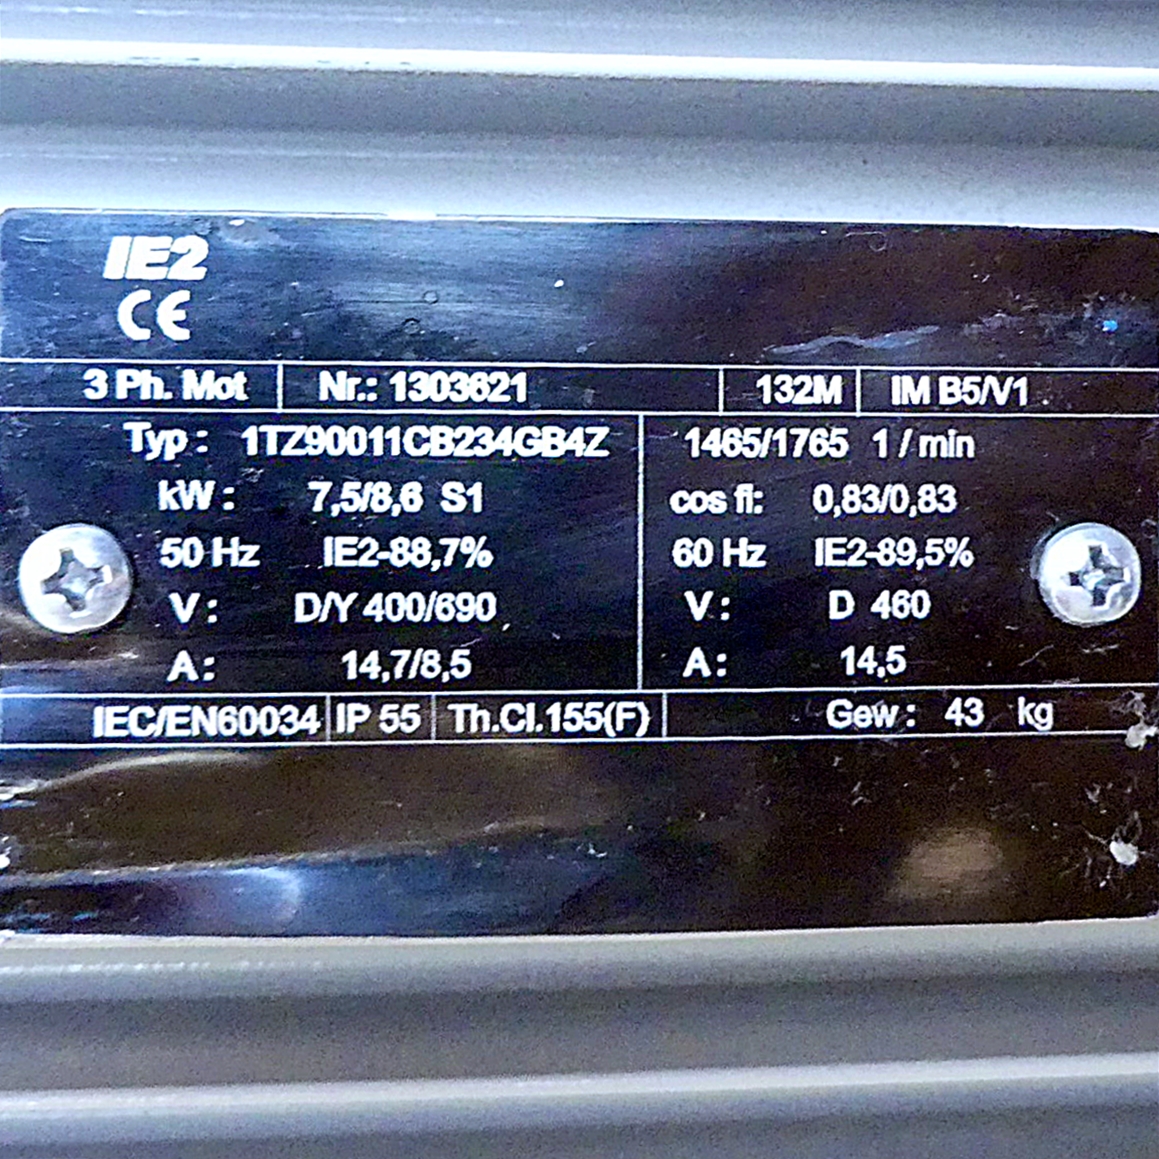 three phase motor 1TZ90011CB234GB4Z 